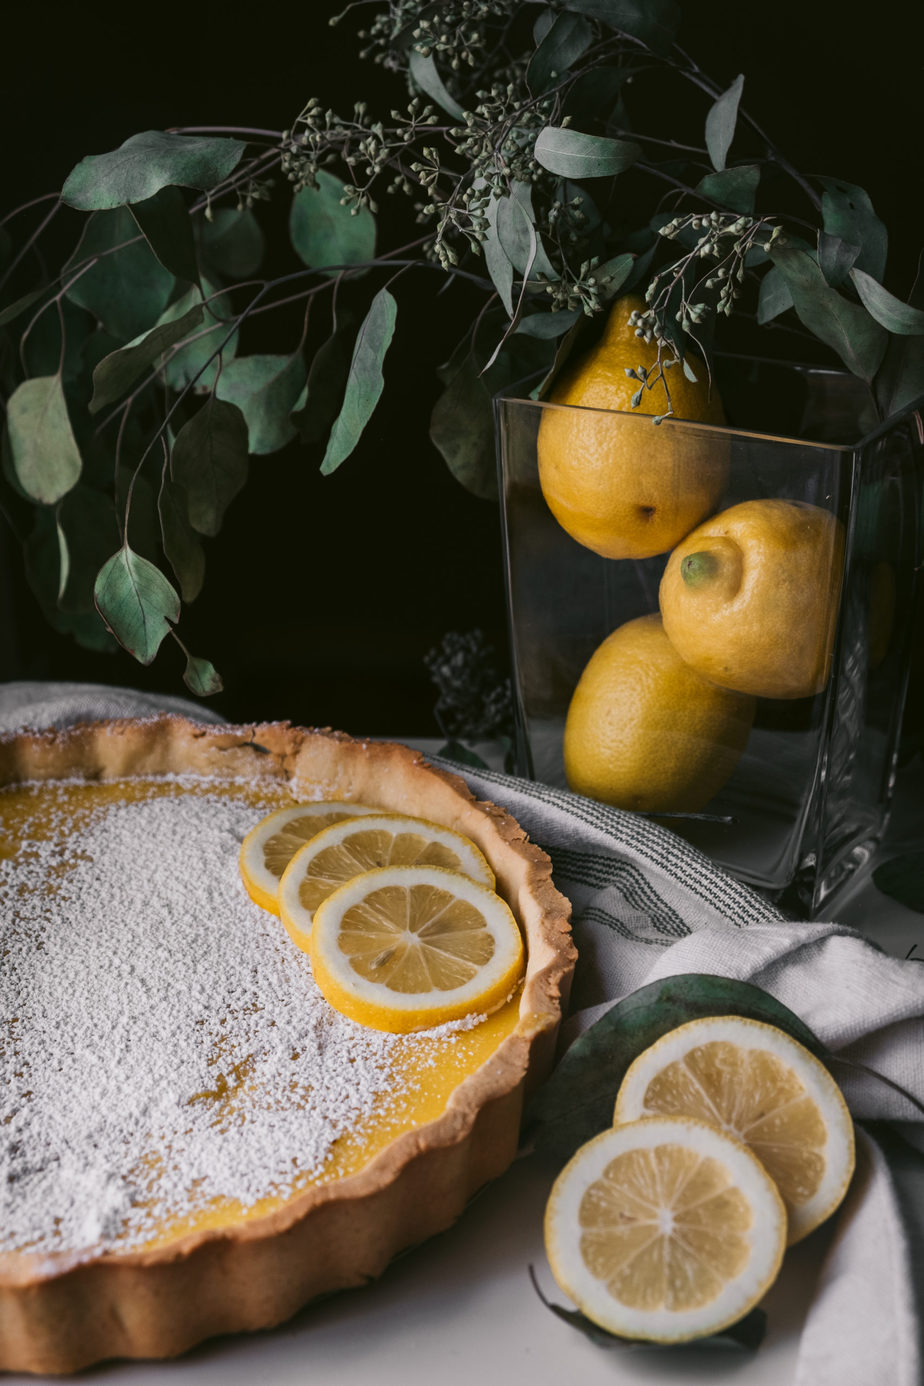 citrus dessert (lemon tart) on table with pitcher of lemons